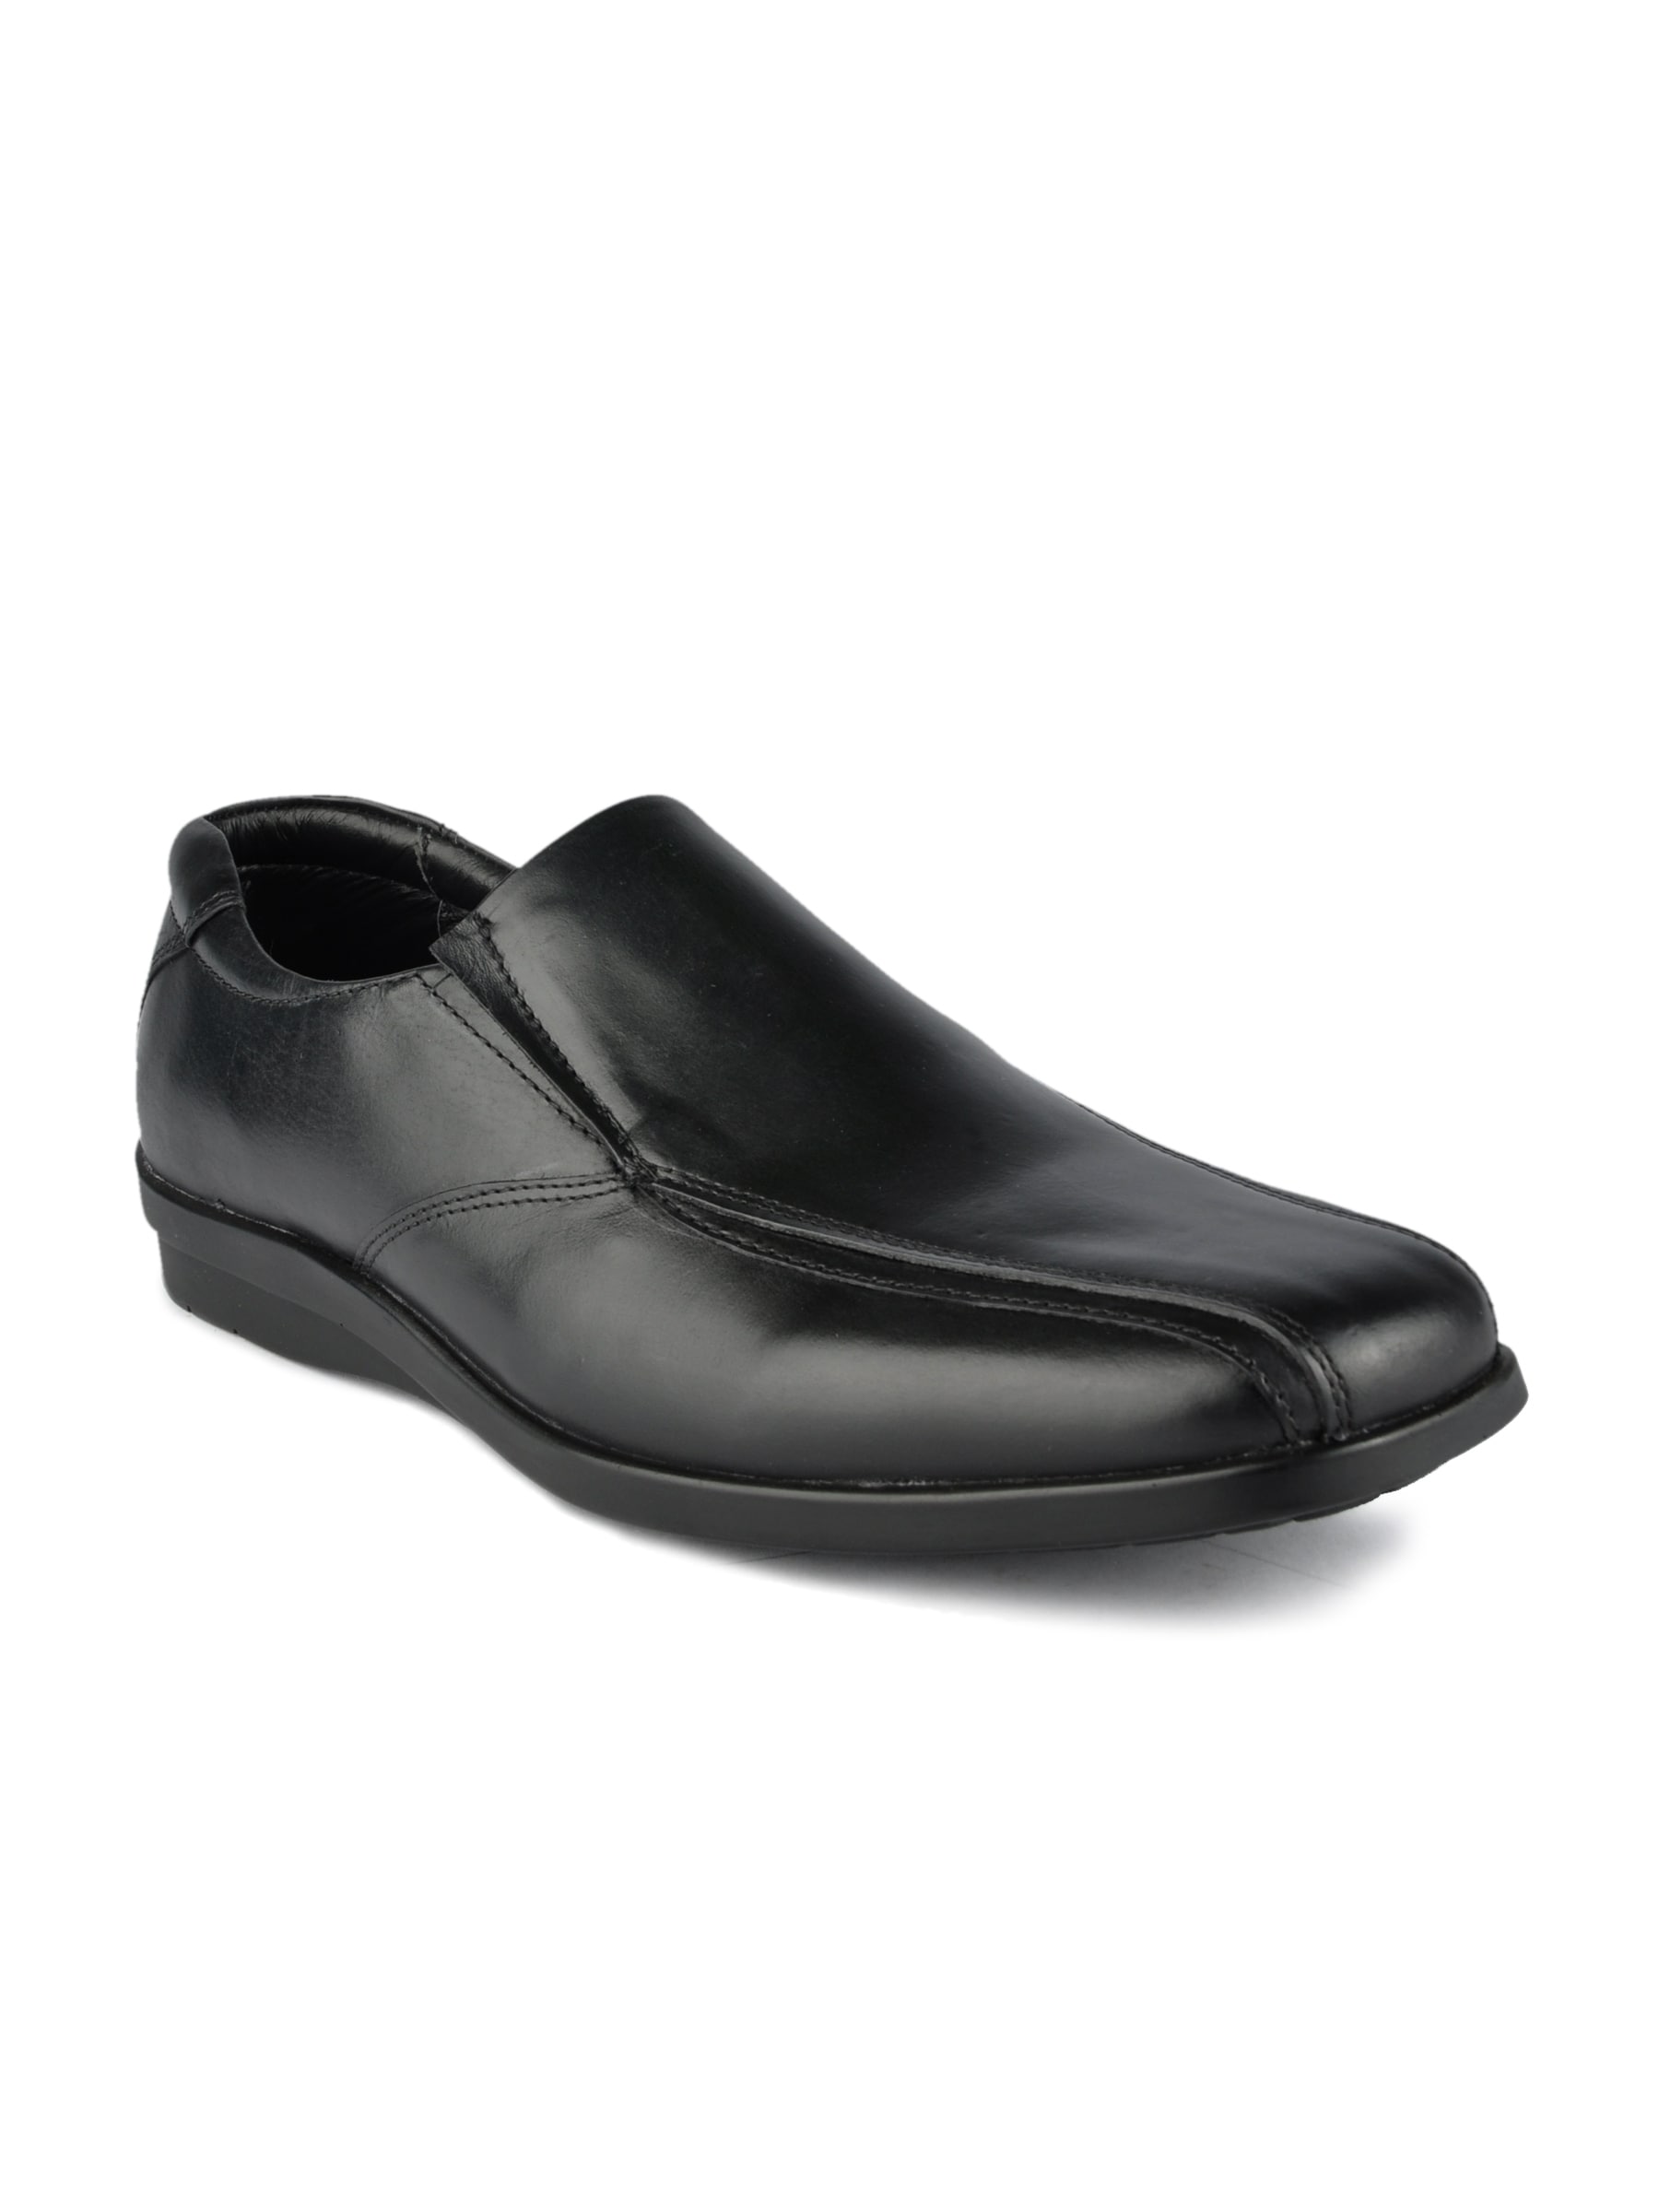 Franco Leone Men Black Formal Shoe